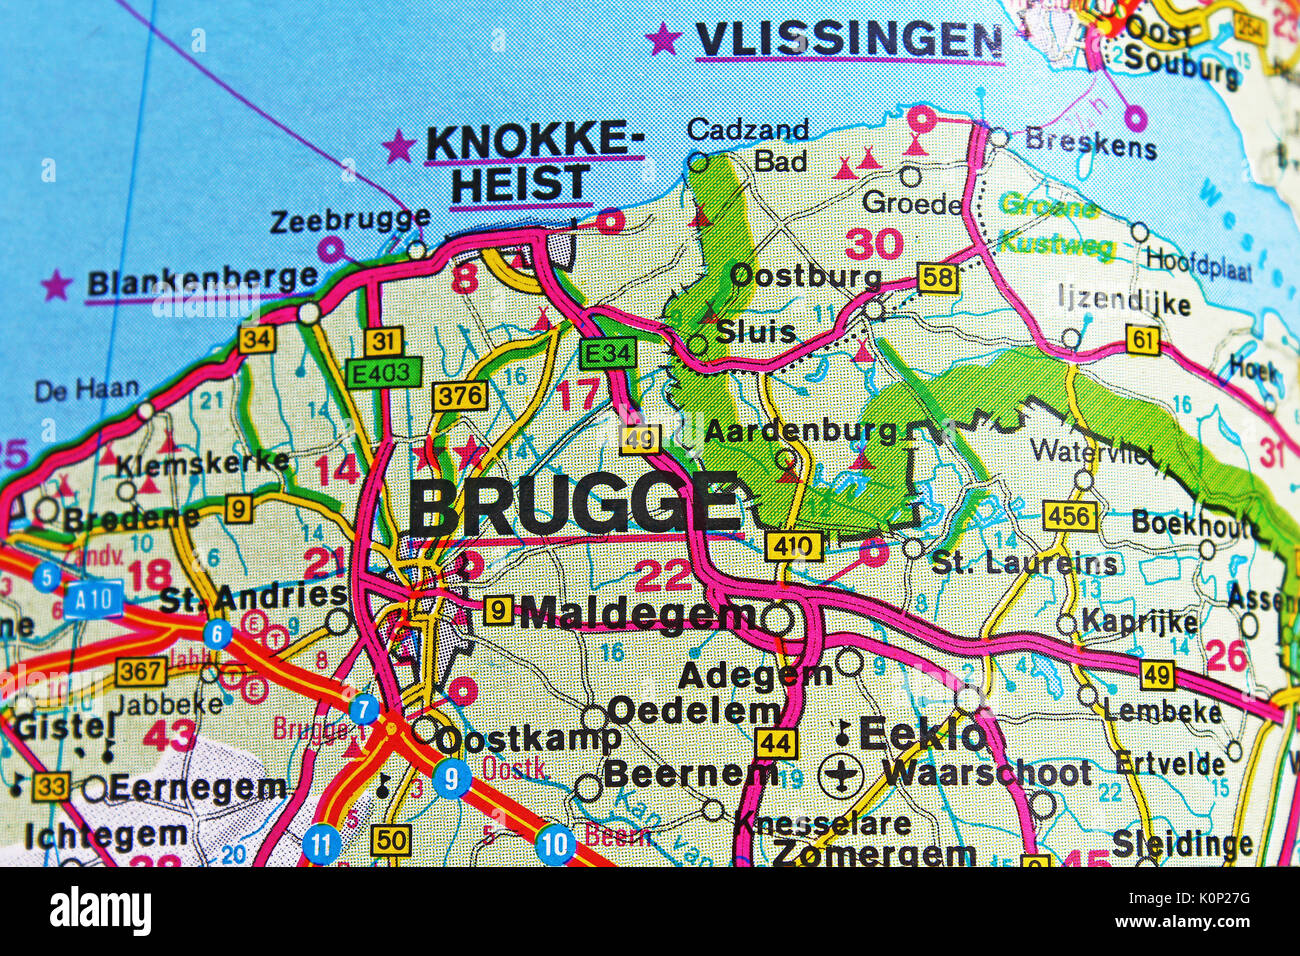 Brugge carte Banque de photographies et d'images à haute résolution - Alamy